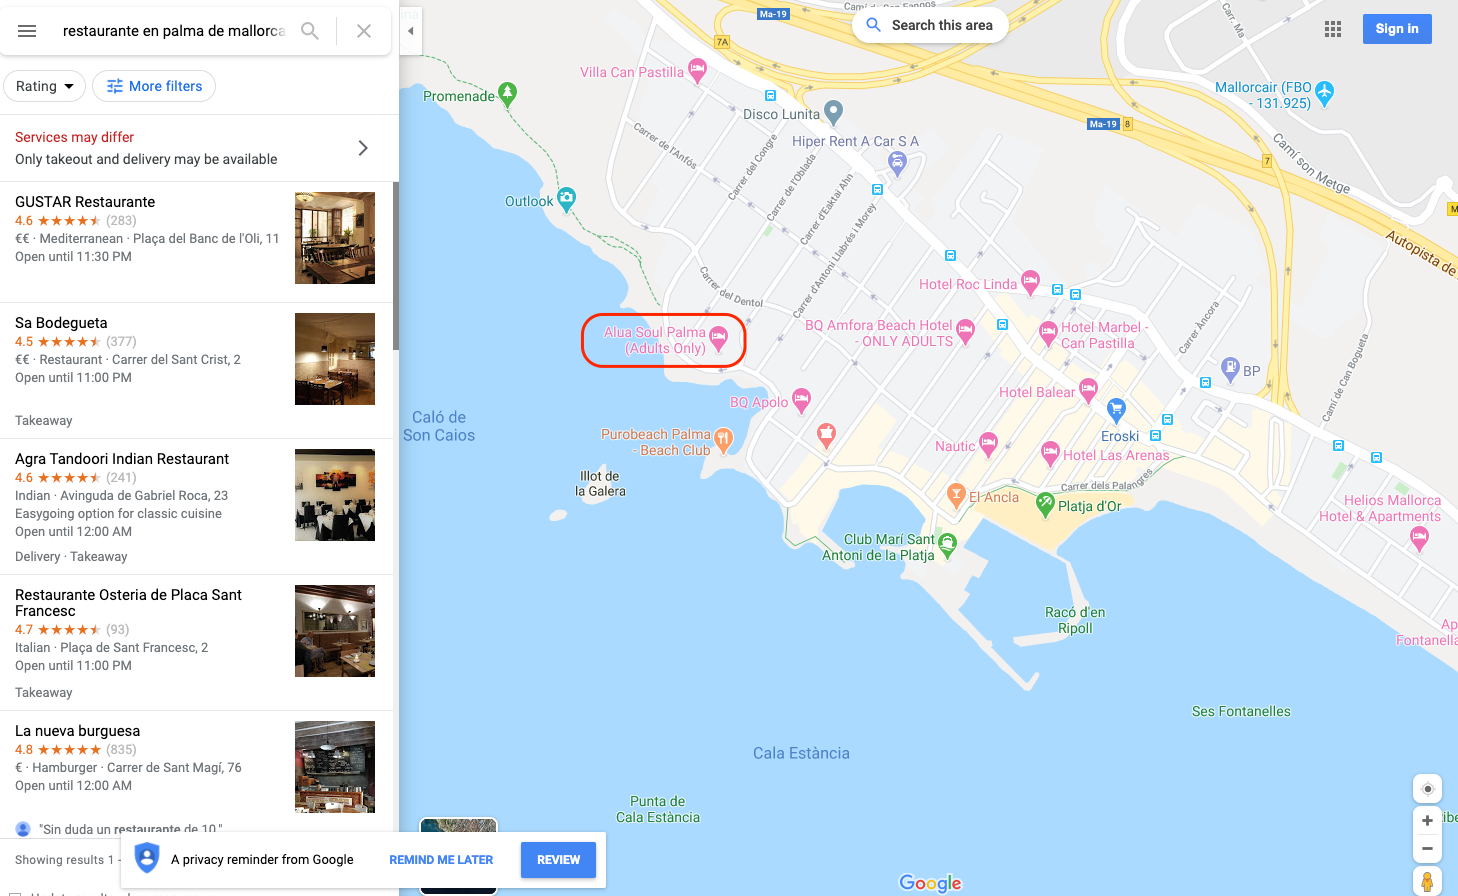 restaurante_en_palma_de_mallorca_-_Google_Maps.png